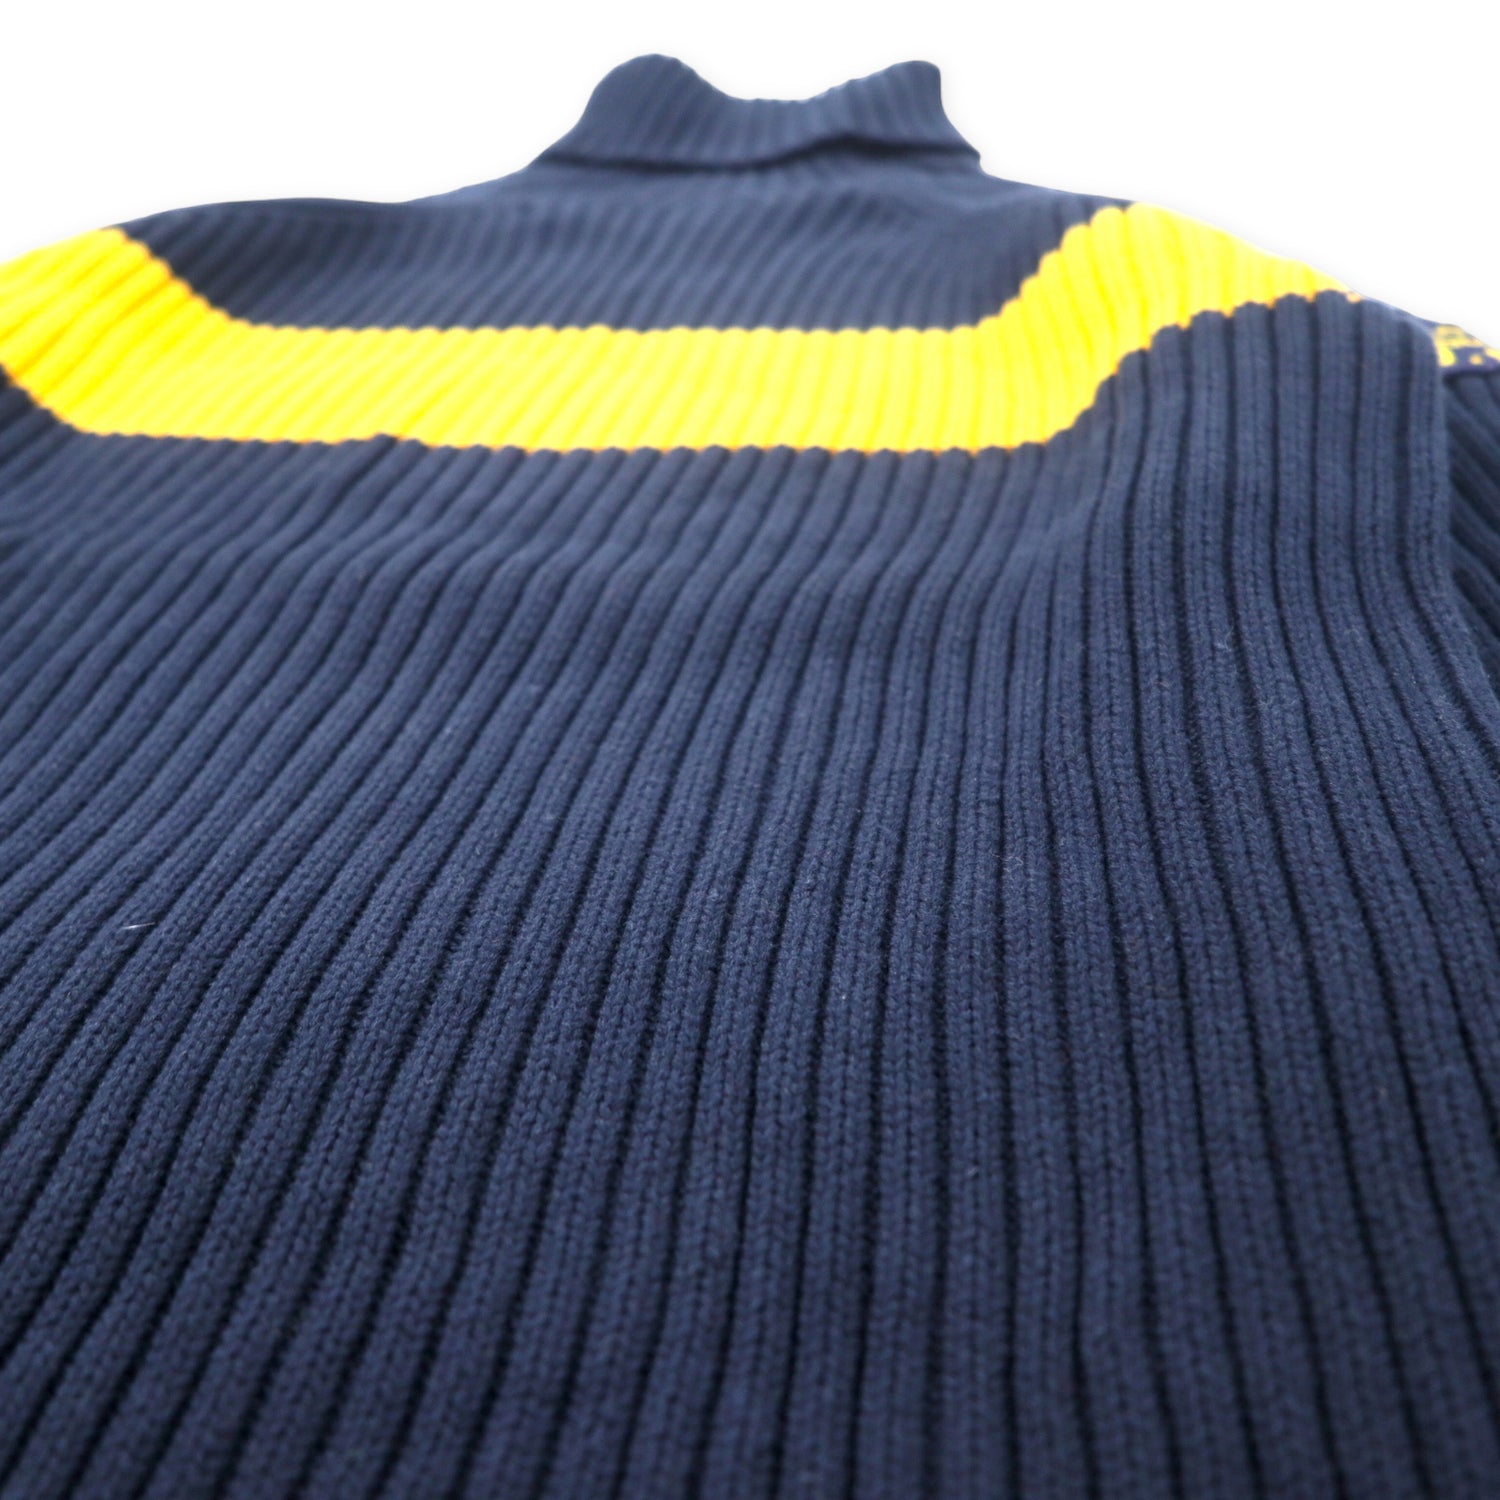 POLO JEANS CO. Ralph Lauren Turph Neck Knit Sweater M Navy Cotton 